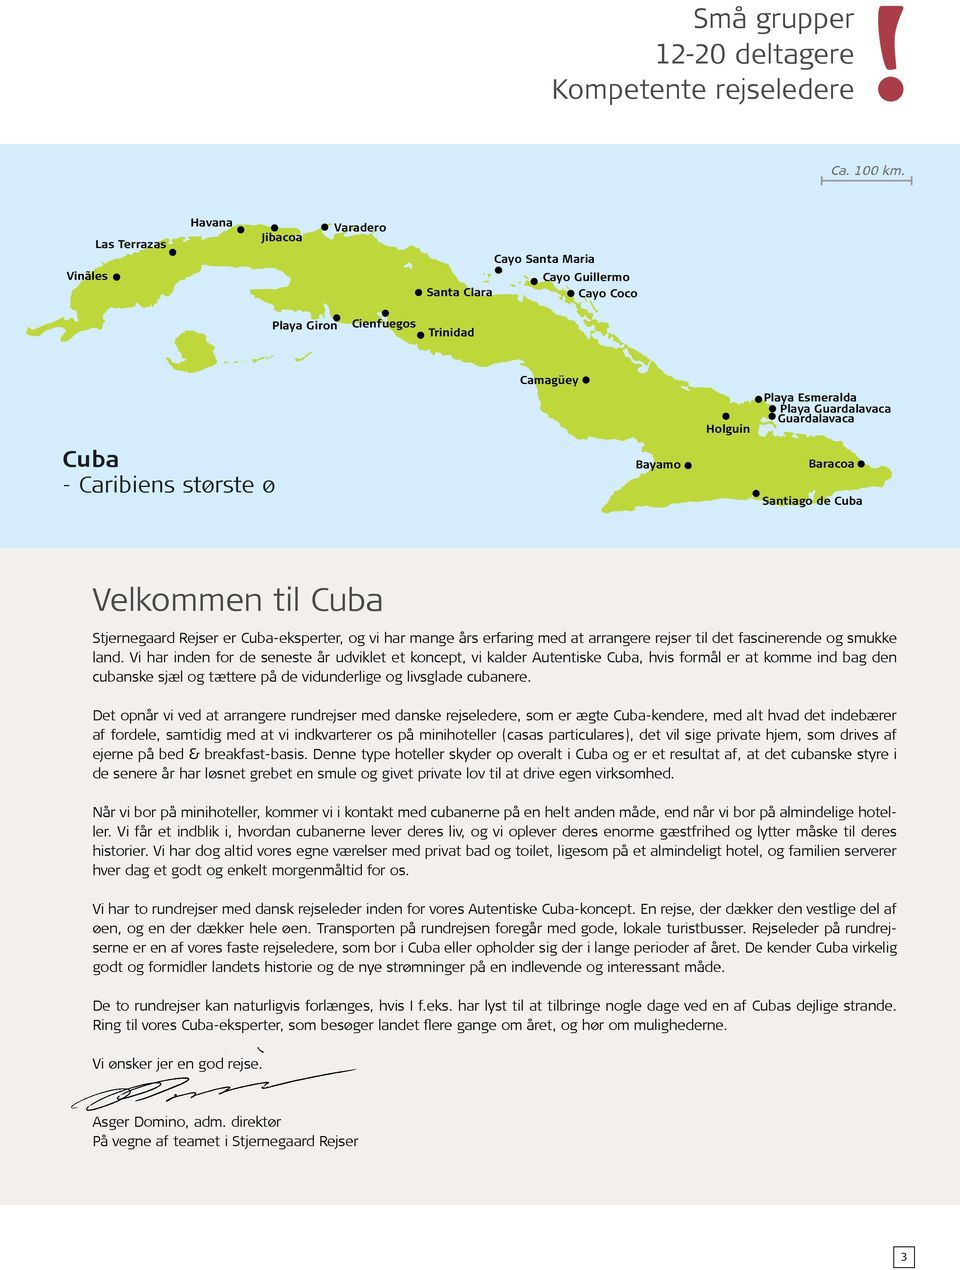 Cuba - Caribiens største ø Bayamo Baracoa Santiago de Cuba Velkommen til Cuba Stjernegaard Rejser er Cuba-eksperter, og vi har mange års erfaring med at arrangere rejser til det fascinerende og